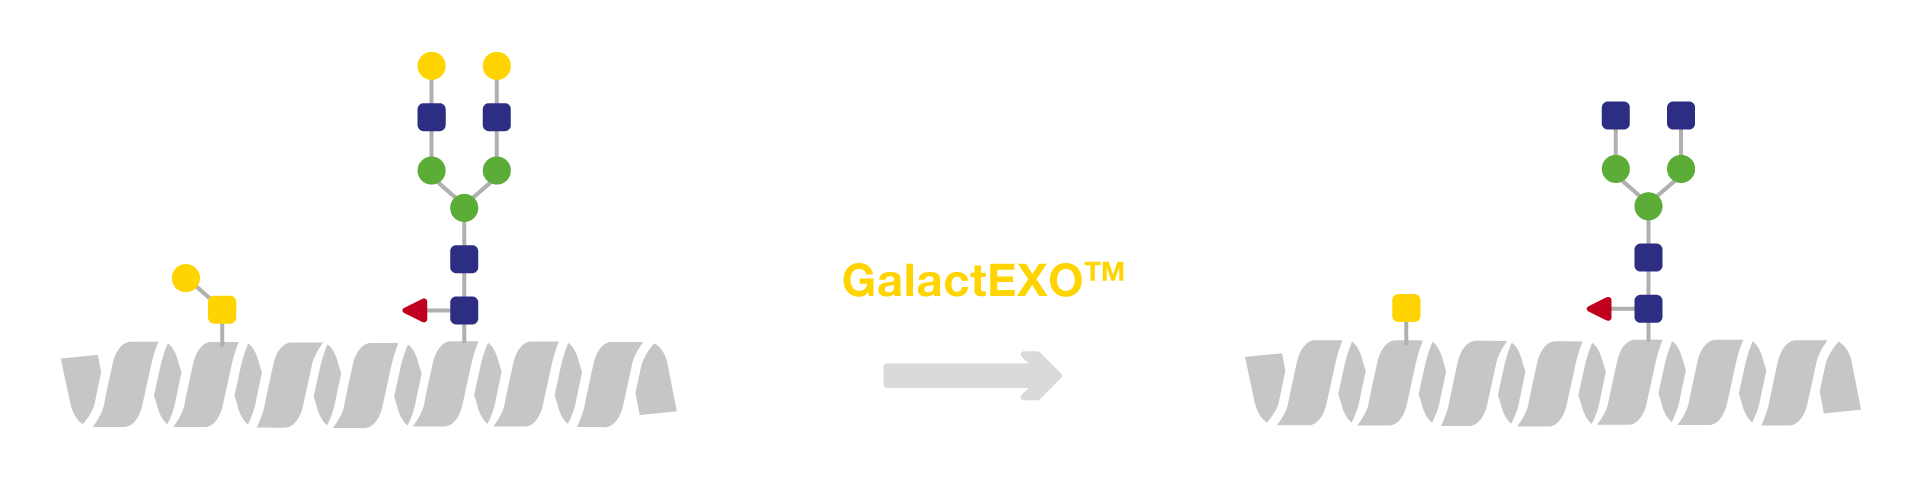 GalactEXO workflow